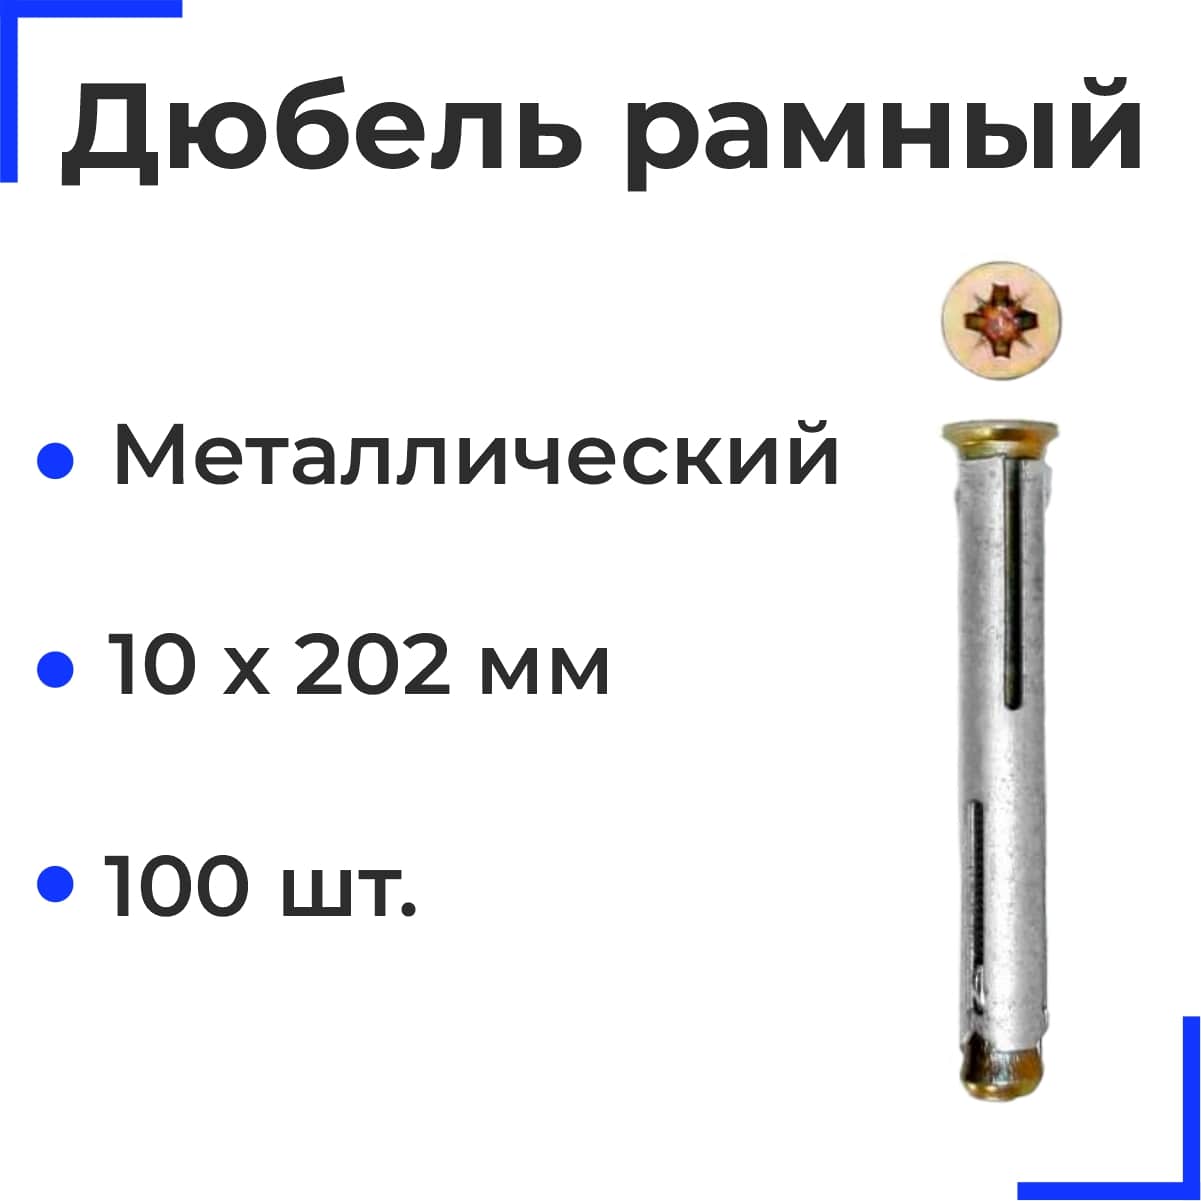 Металлический рамный дюбель 10х202 (100 шт)